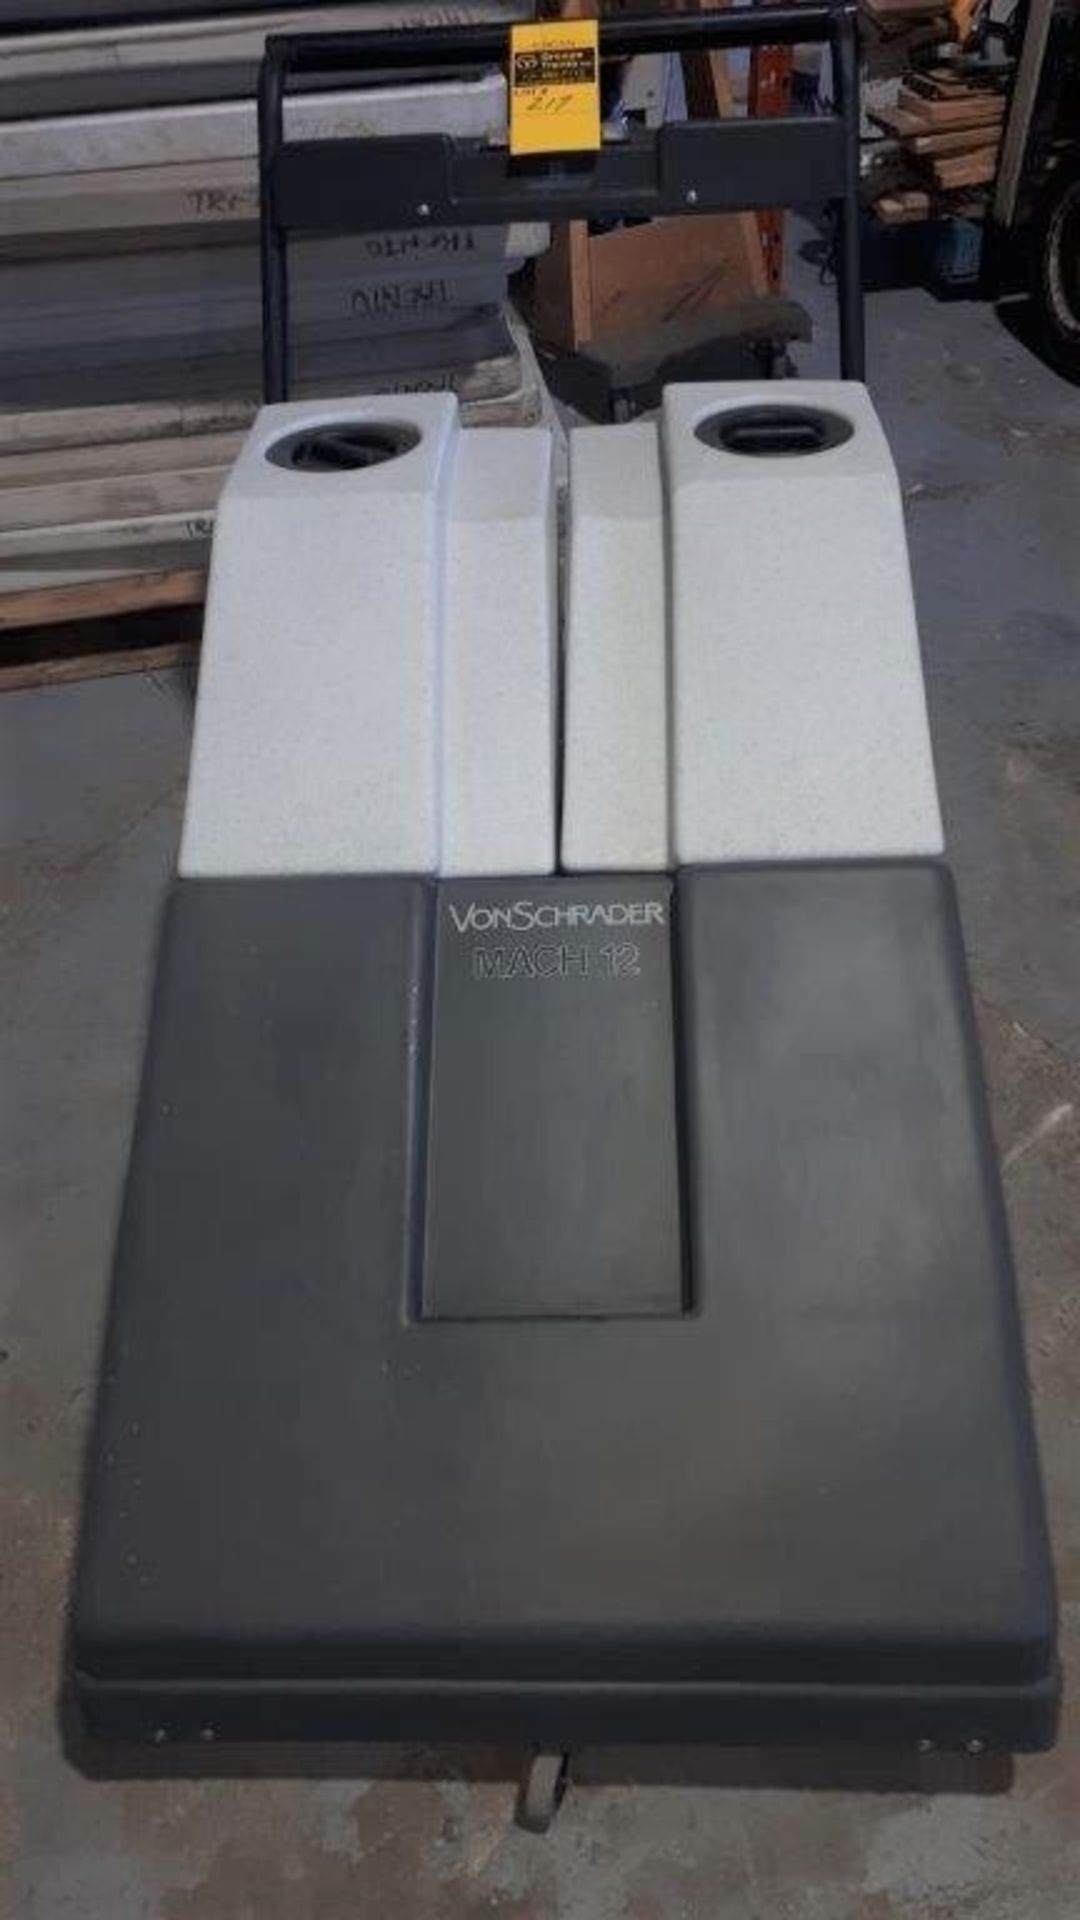 VONSCHRADER Carpet Cleeaning/Extractor Machine, mod: VS 12